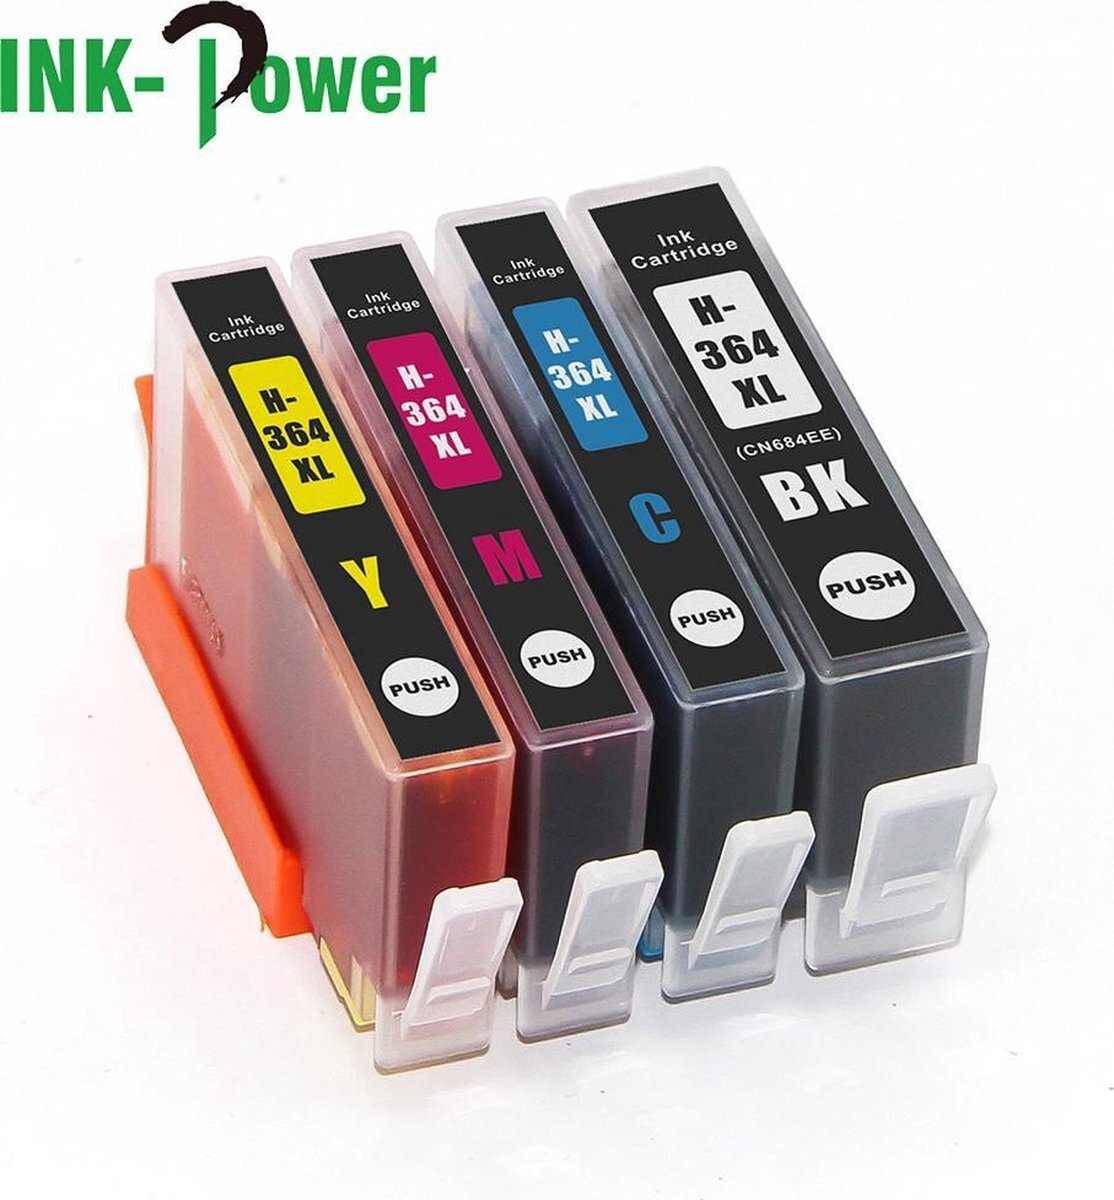 Ink Power Inktcartridge voor HP 364XL | Multipack van 4 stuks voor HP Photosmart 5510 - 5514 - 5515 - 5520 - 5522 - 5524 - 5525 - 6510 - 6520 ,6525 - 7510 - 7520 - B109n - B110 - B209a - B210 - B8550 - C5380 - C6380 - D5460